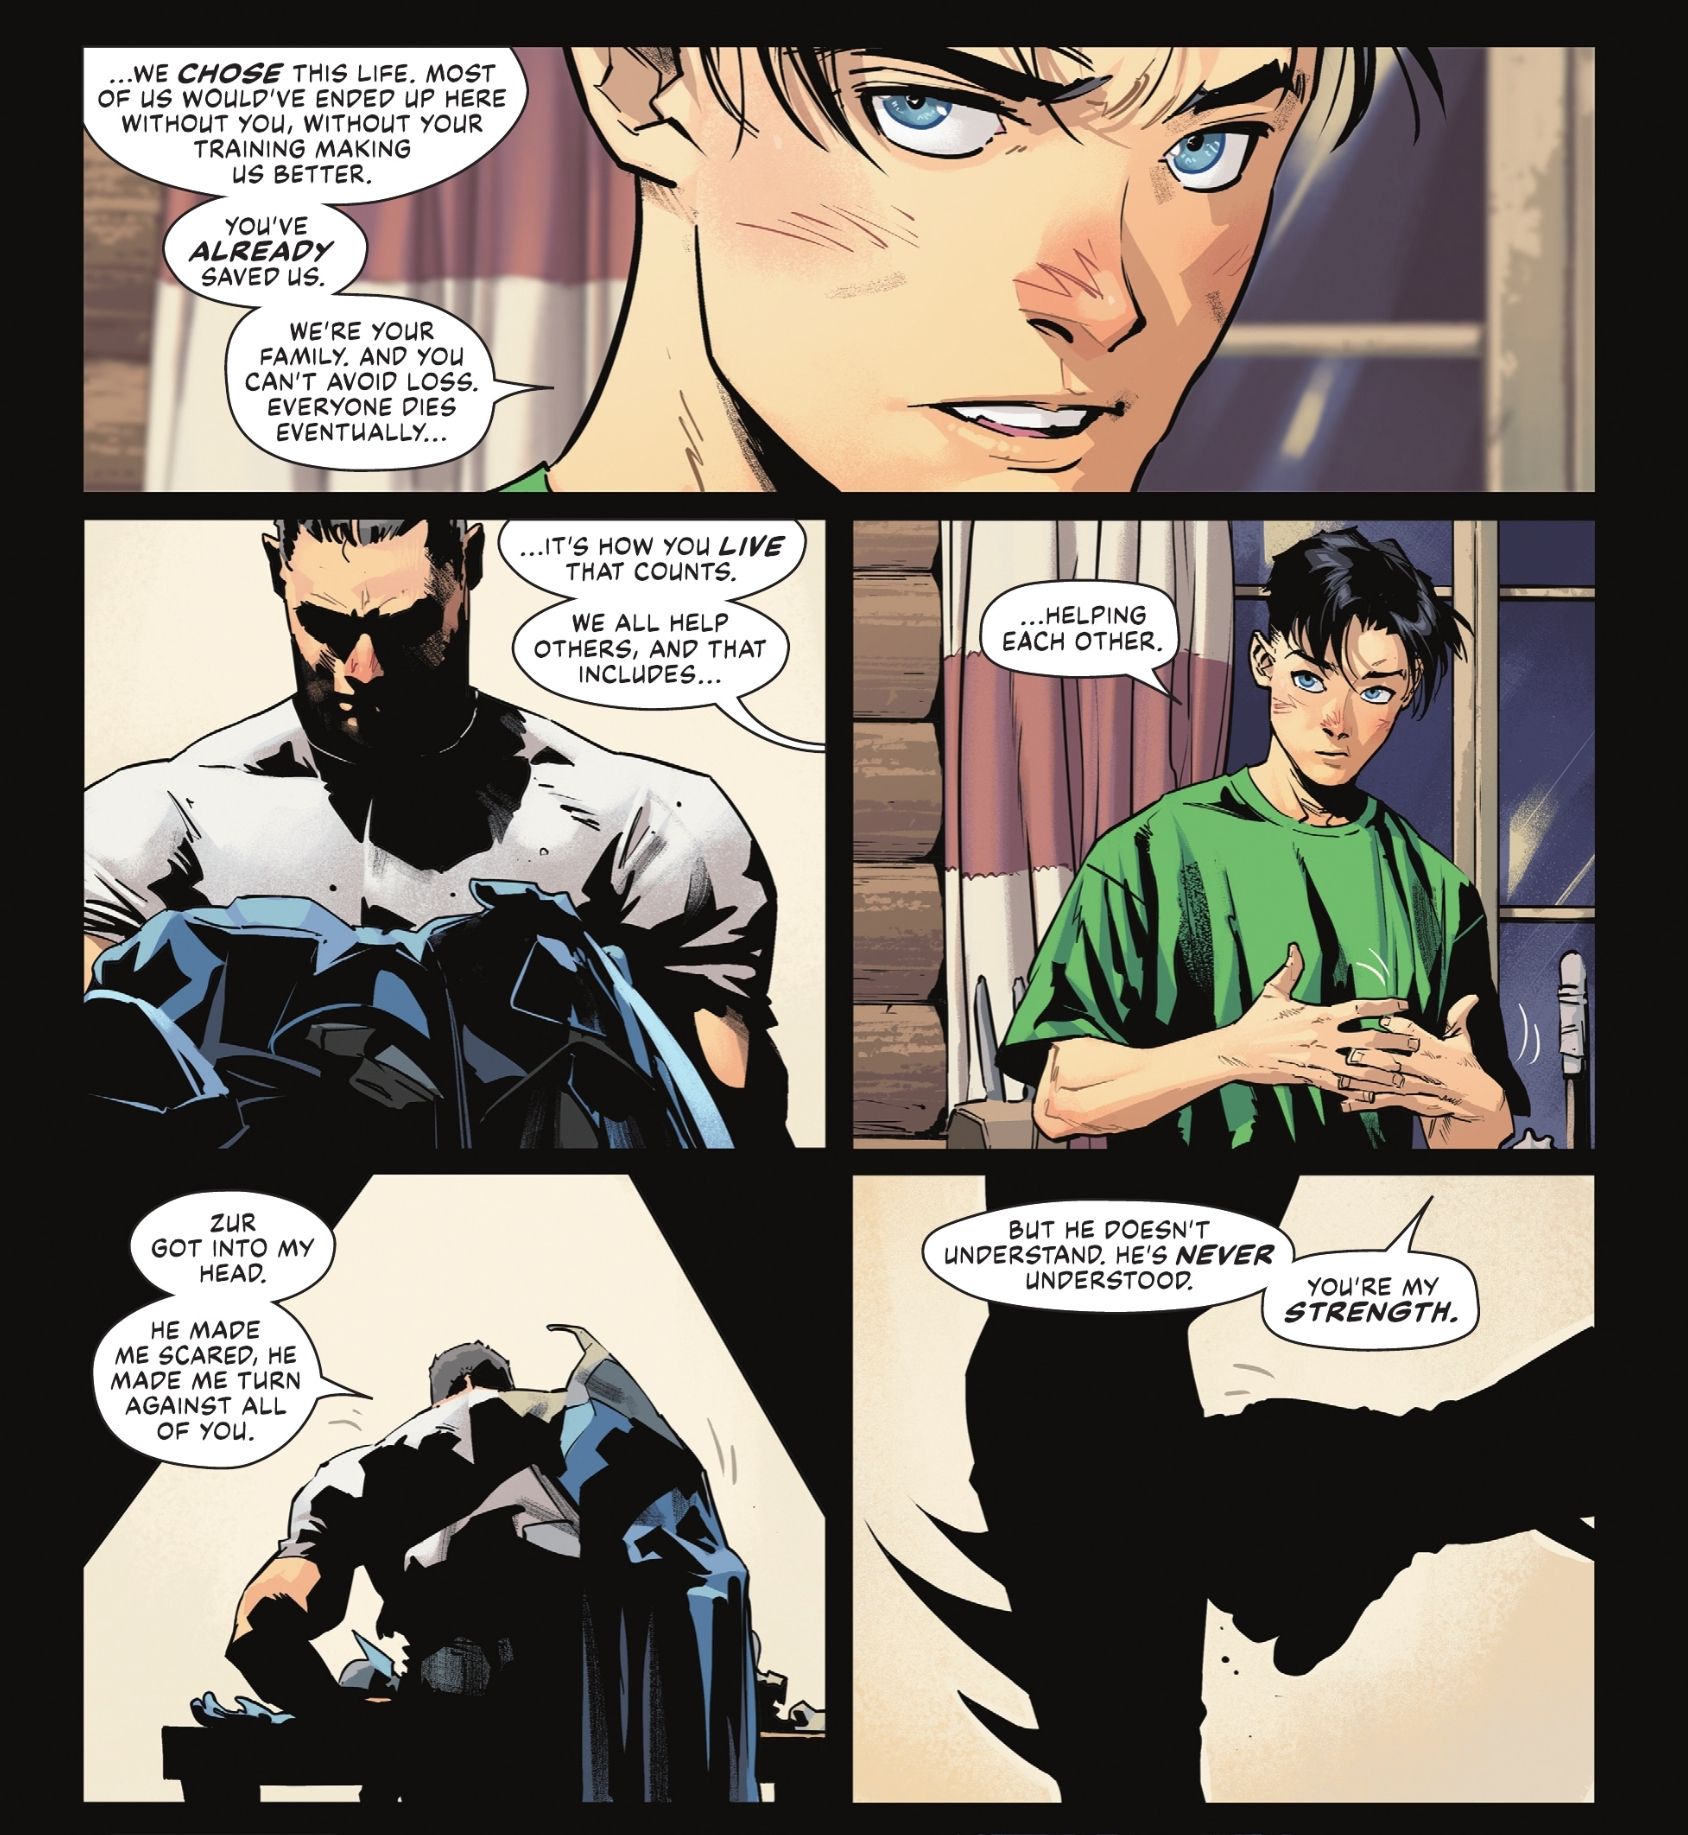 Tim lembra ao Batman que sua família está lá para apoiá-lo e ajudá-lo.